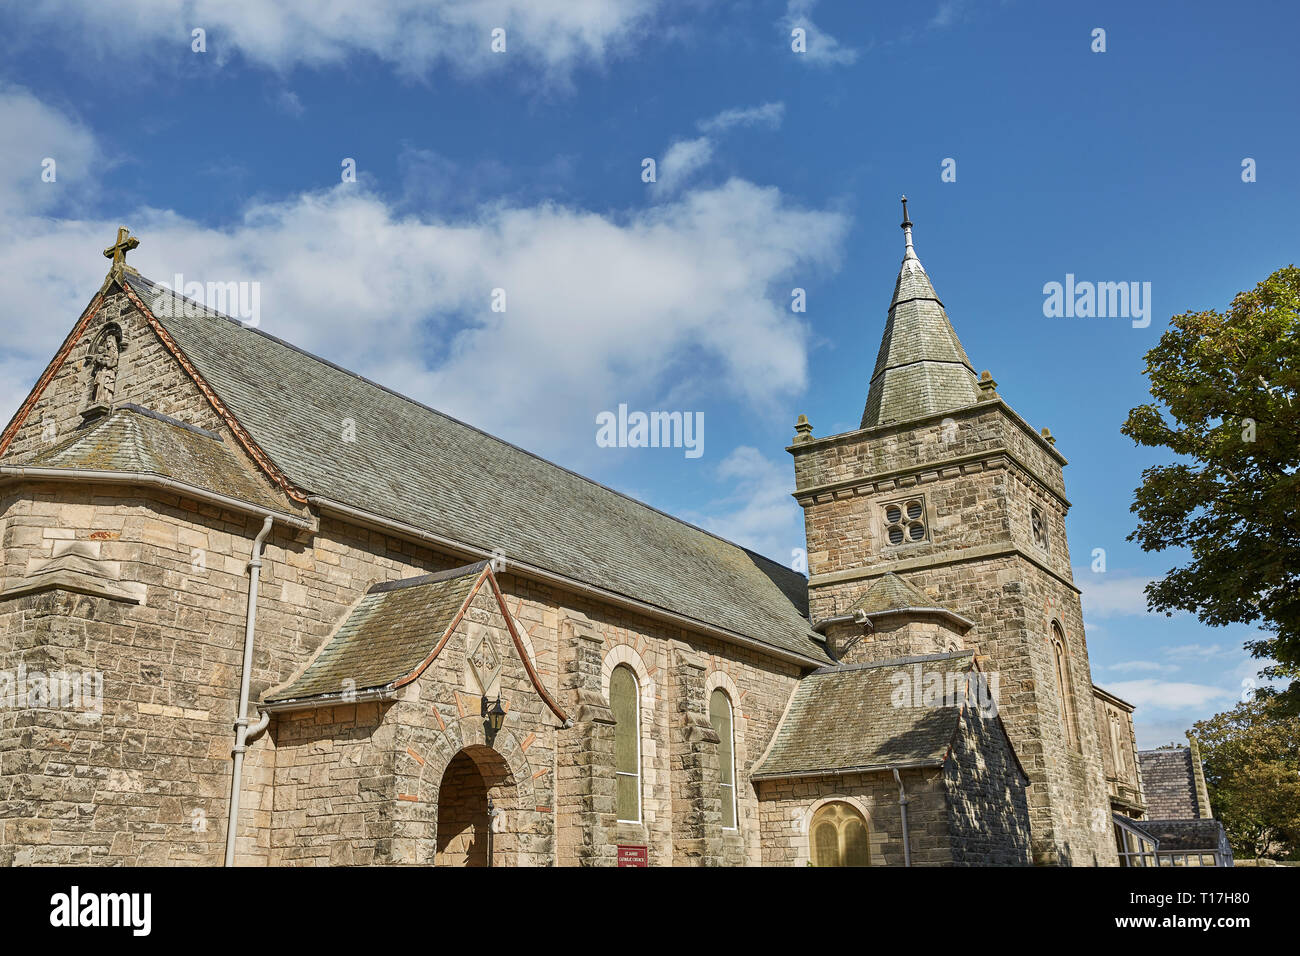 Kirche der Heiligen Dreifaltigkeit in St Andrews, Schottland, eine berühmte historische Kirche bekannt für die Vereinigung zu John Knox Stockfoto